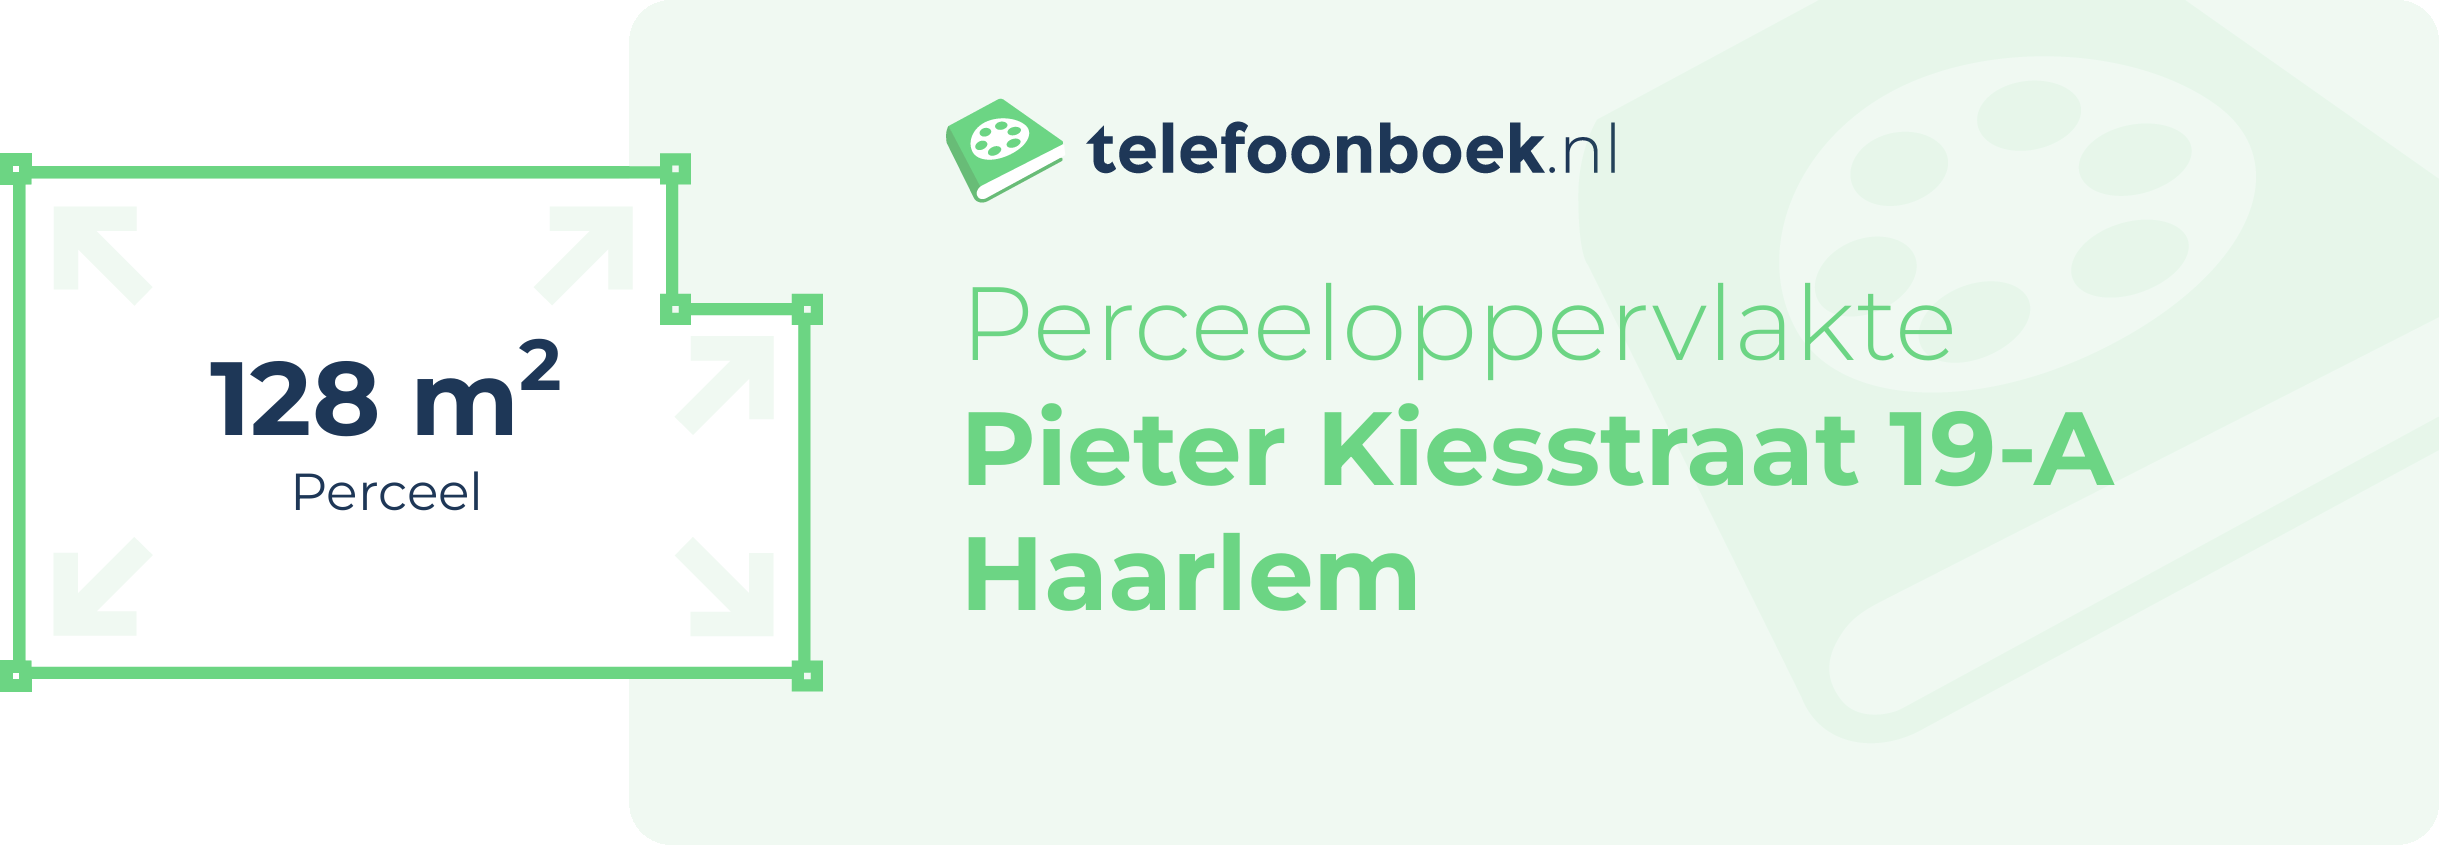 Perceeloppervlakte Pieter Kiesstraat 19-A Haarlem